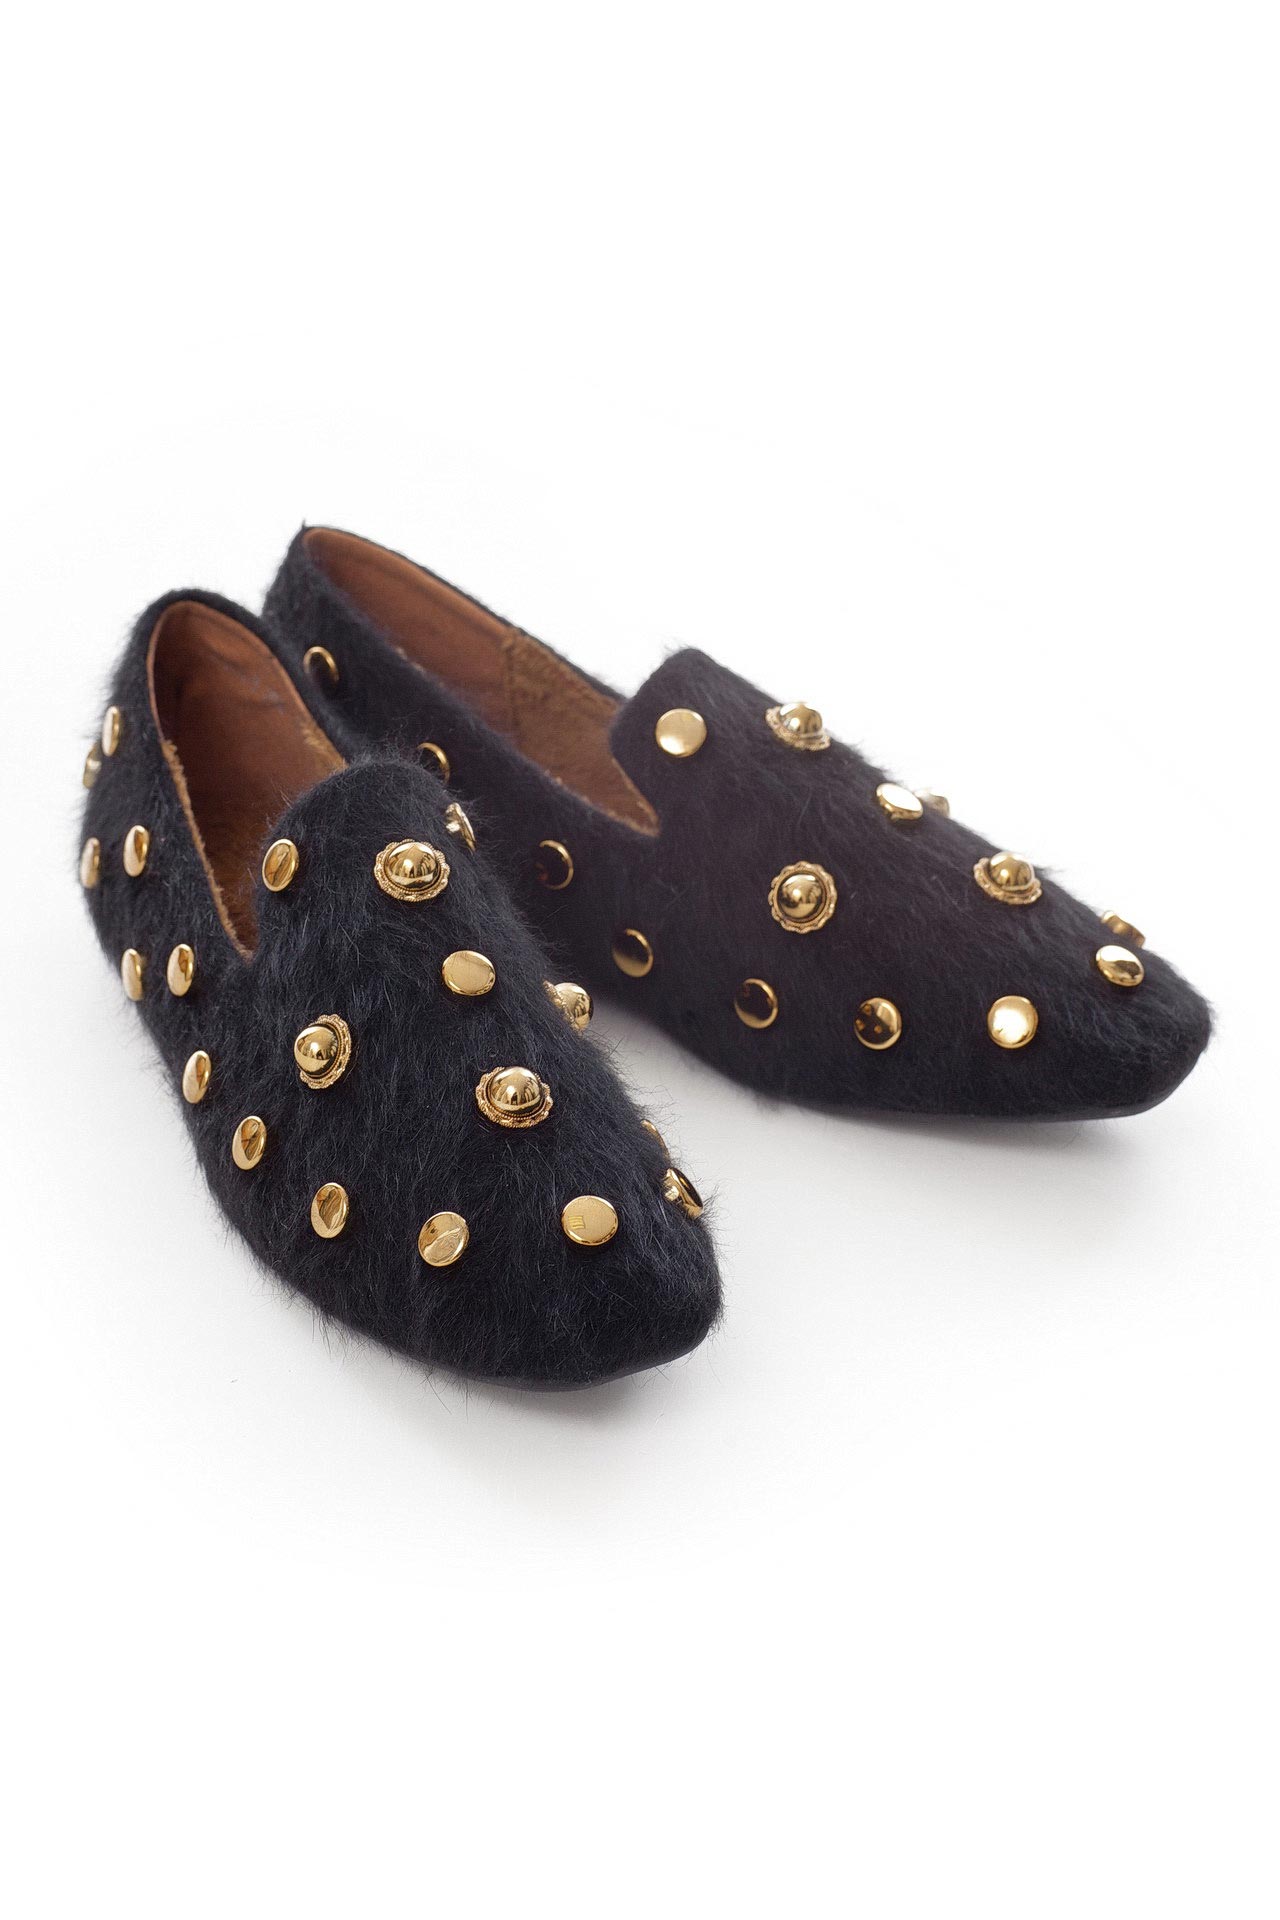 Обувь женская Туфли FASHION (821T17/18.1). Купить за 4550 руб.